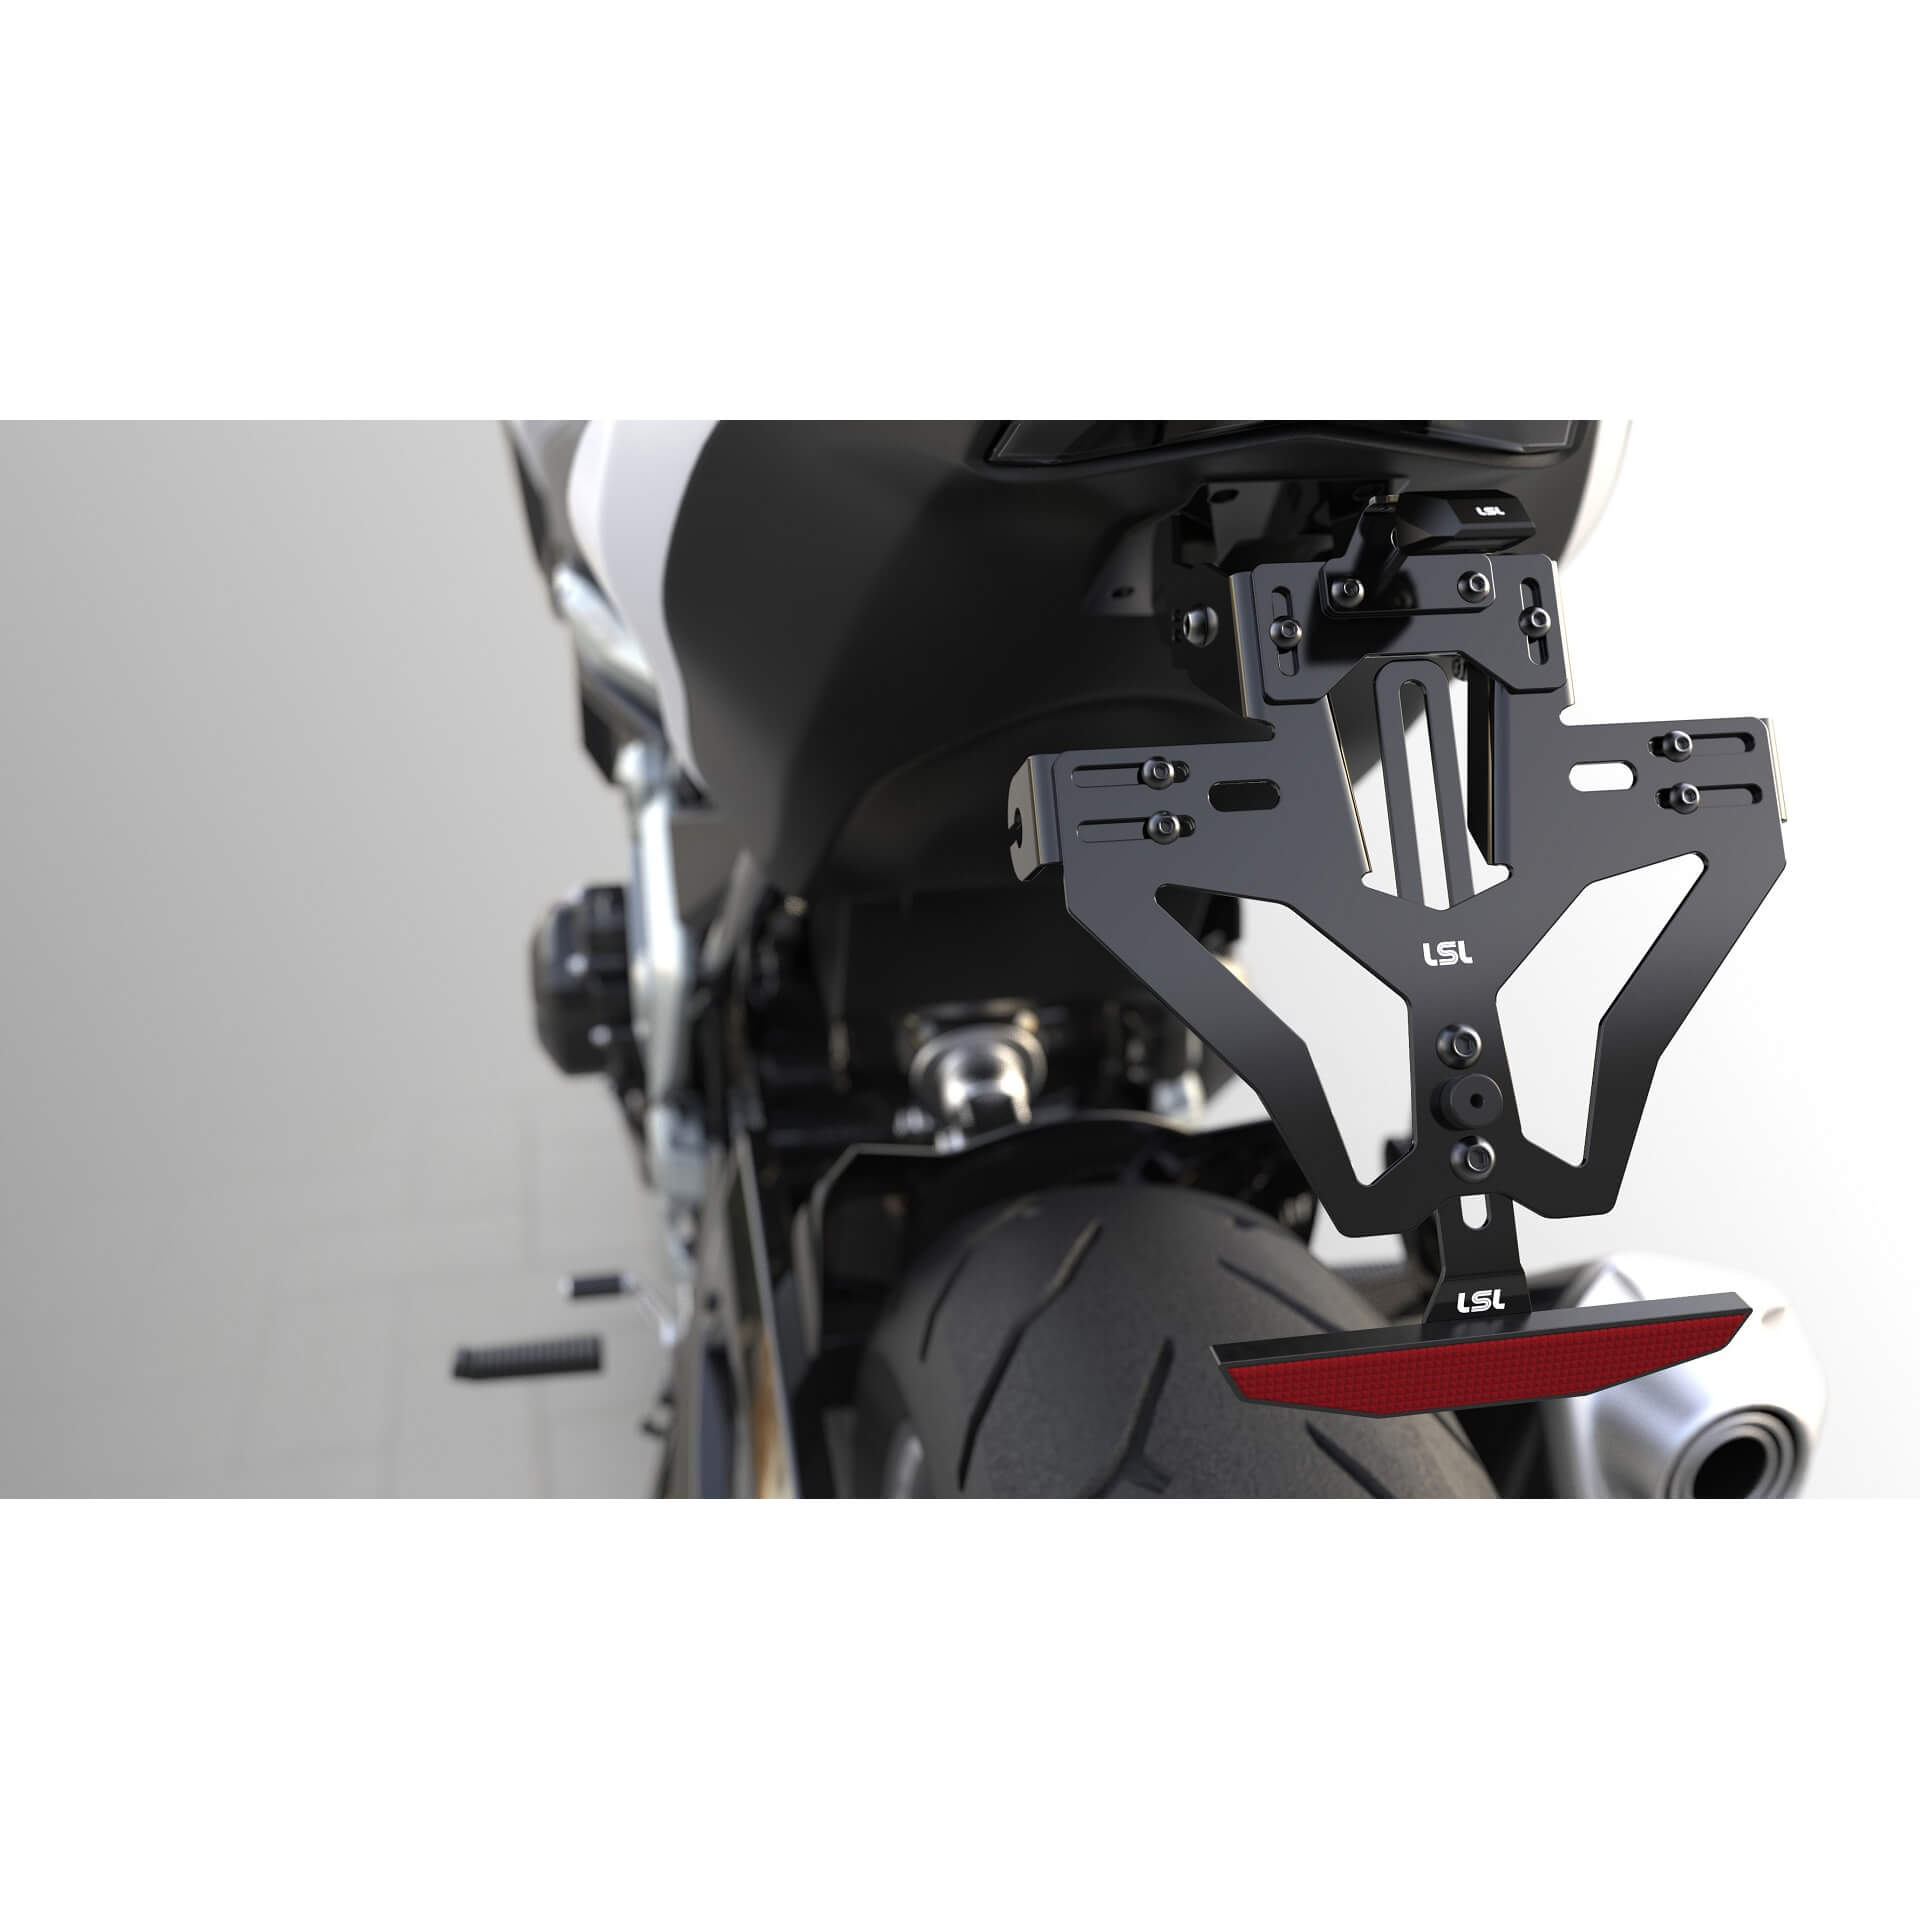 lsl MANTIS-RS PRO für Honda CB 500 F / CBR 500 R 16-, inkl. Kennzeichenbeleuchtung